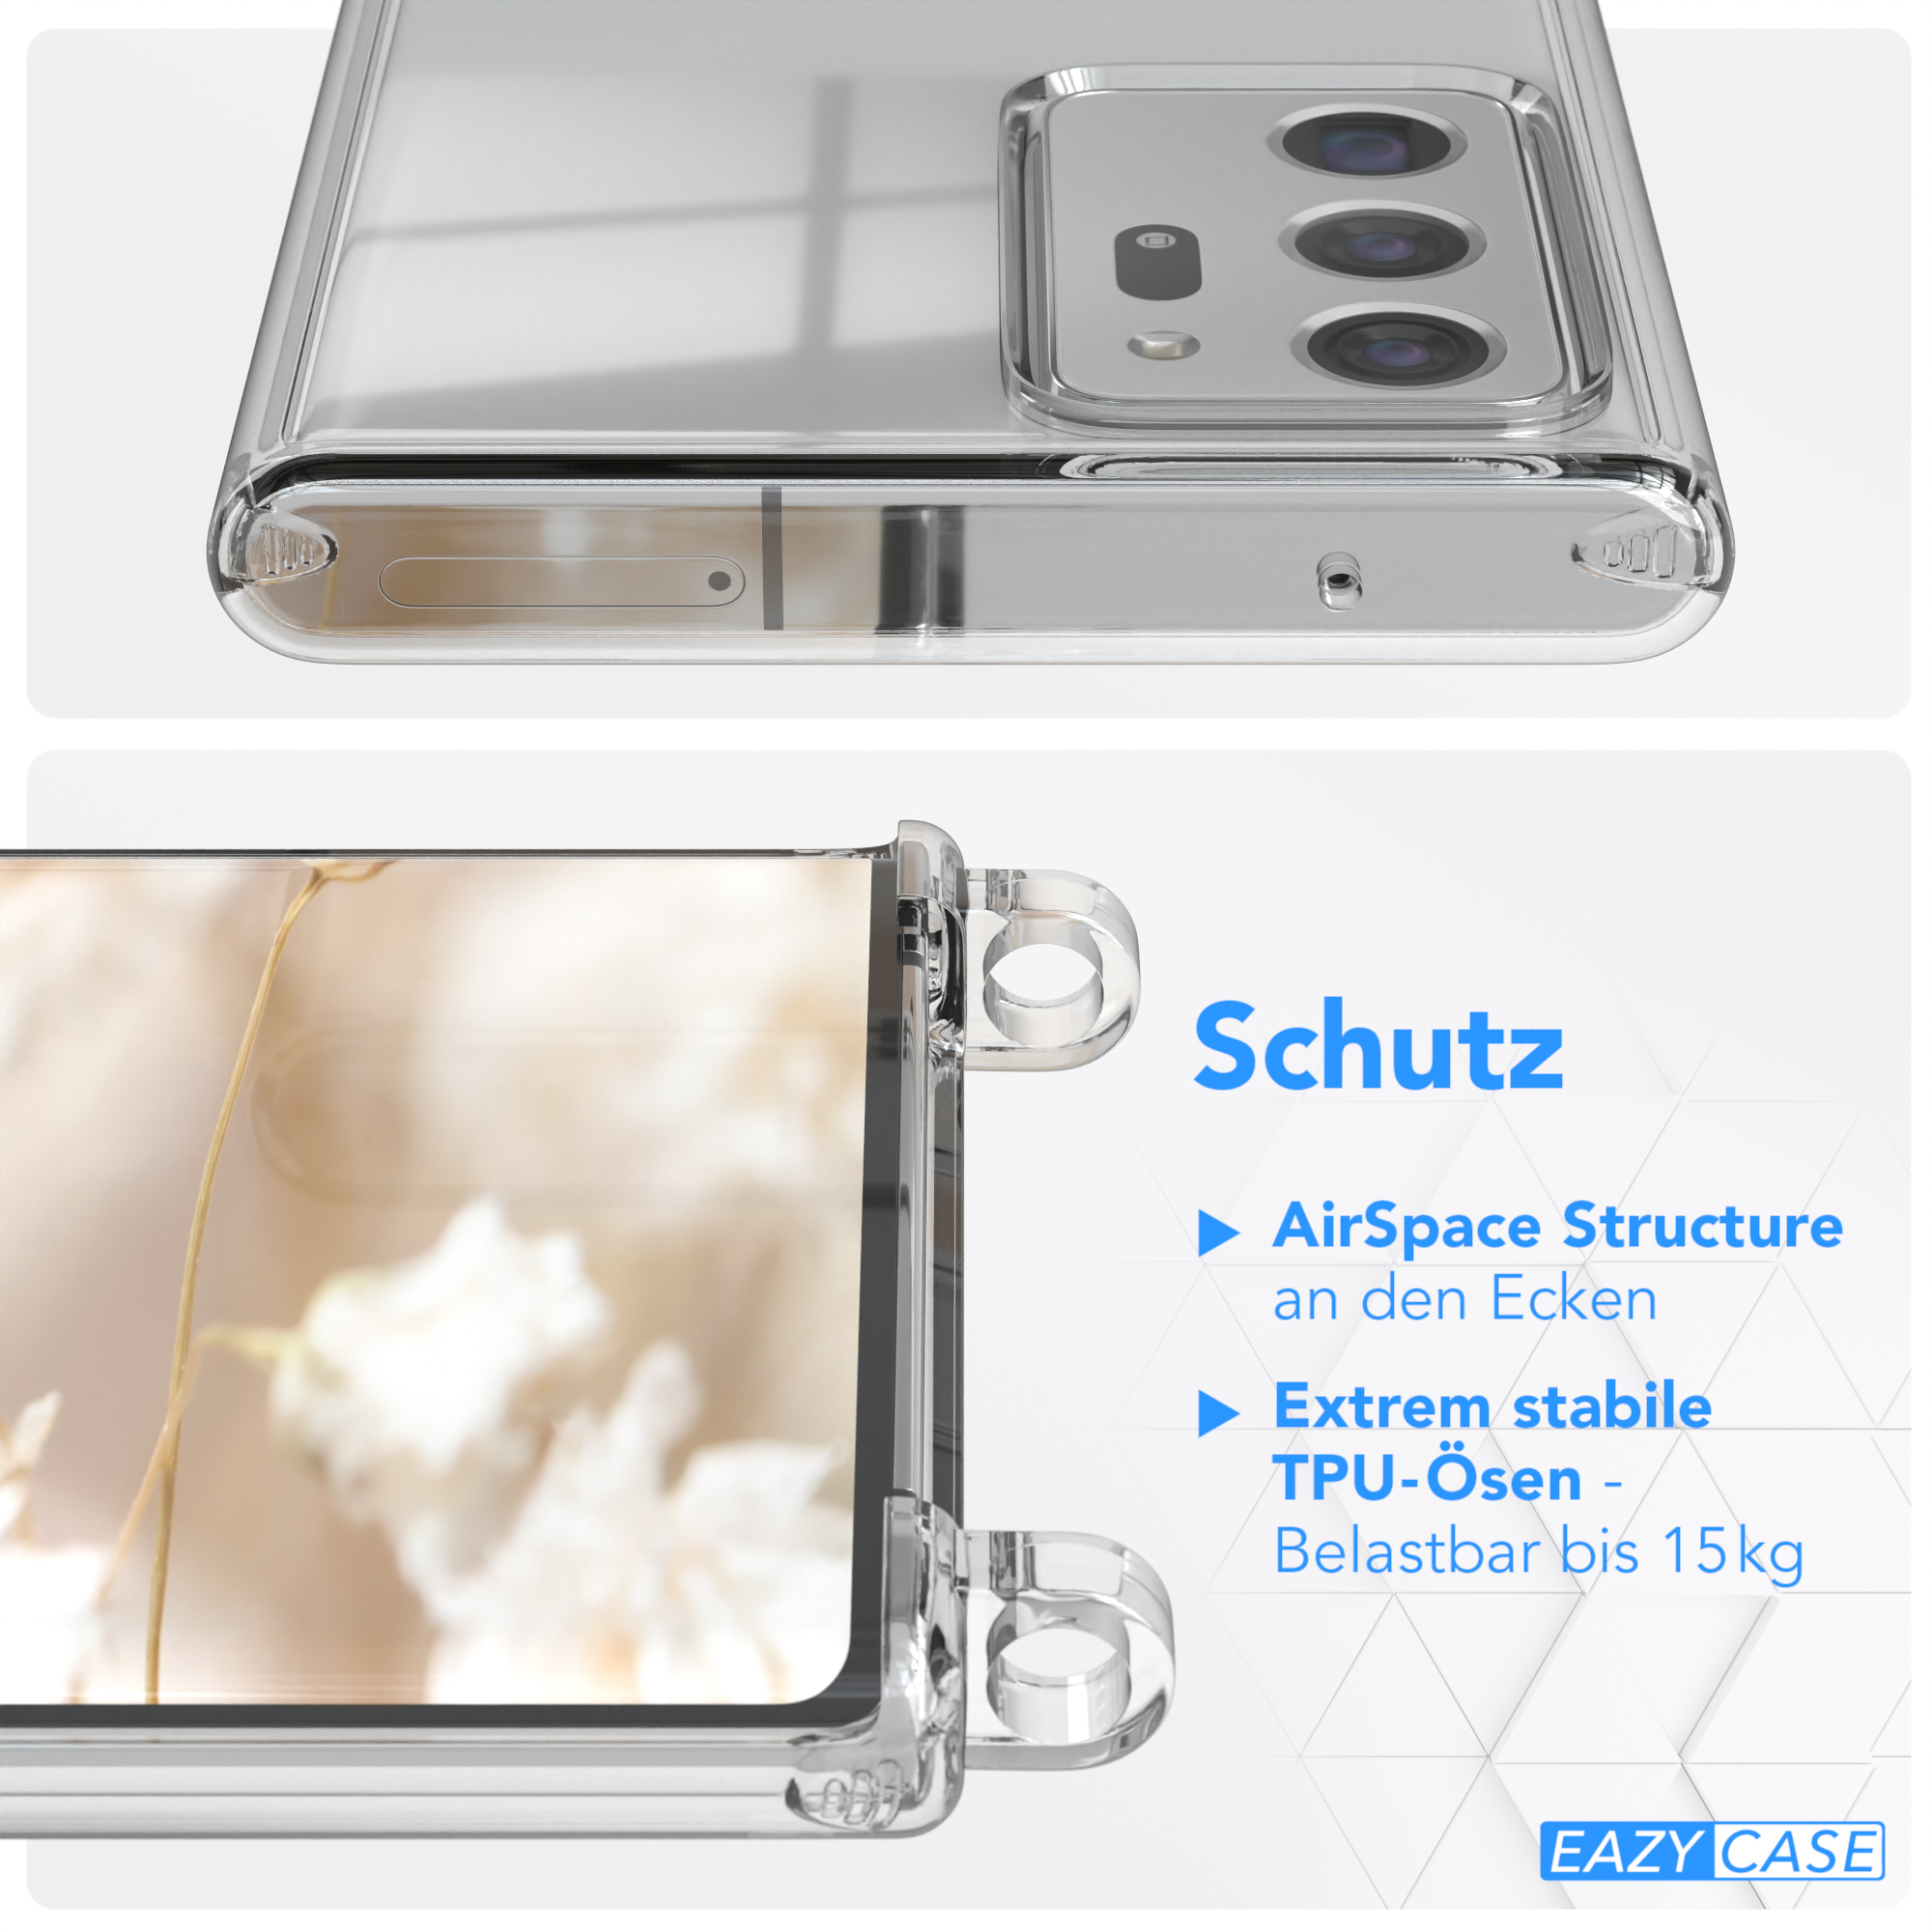 EAZY CASE Transparente Handyhülle Samsung, 5G, Boho Umhängetasche, Galaxy / Weiß / Ultra Ultra Note Style, Note mit Kordel 20 Blau 20